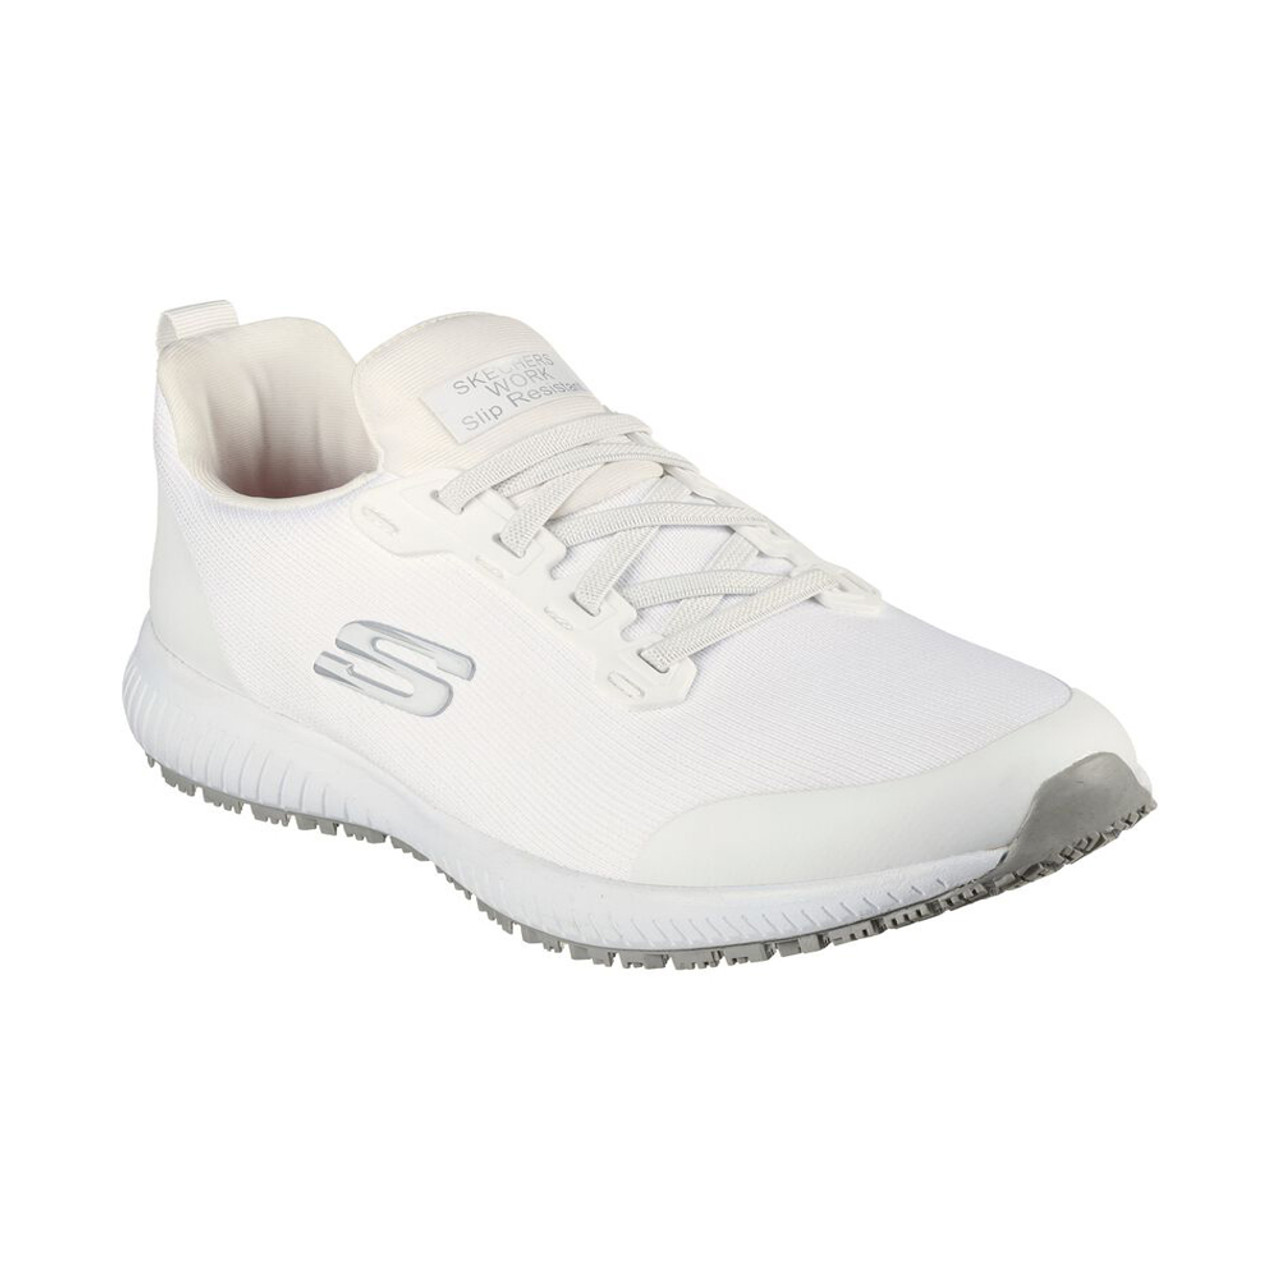 Skechers Women's Slip Resistant Work Shoe - White | Women's Work Shoes & More - Shoolu.com | Shoolu.com